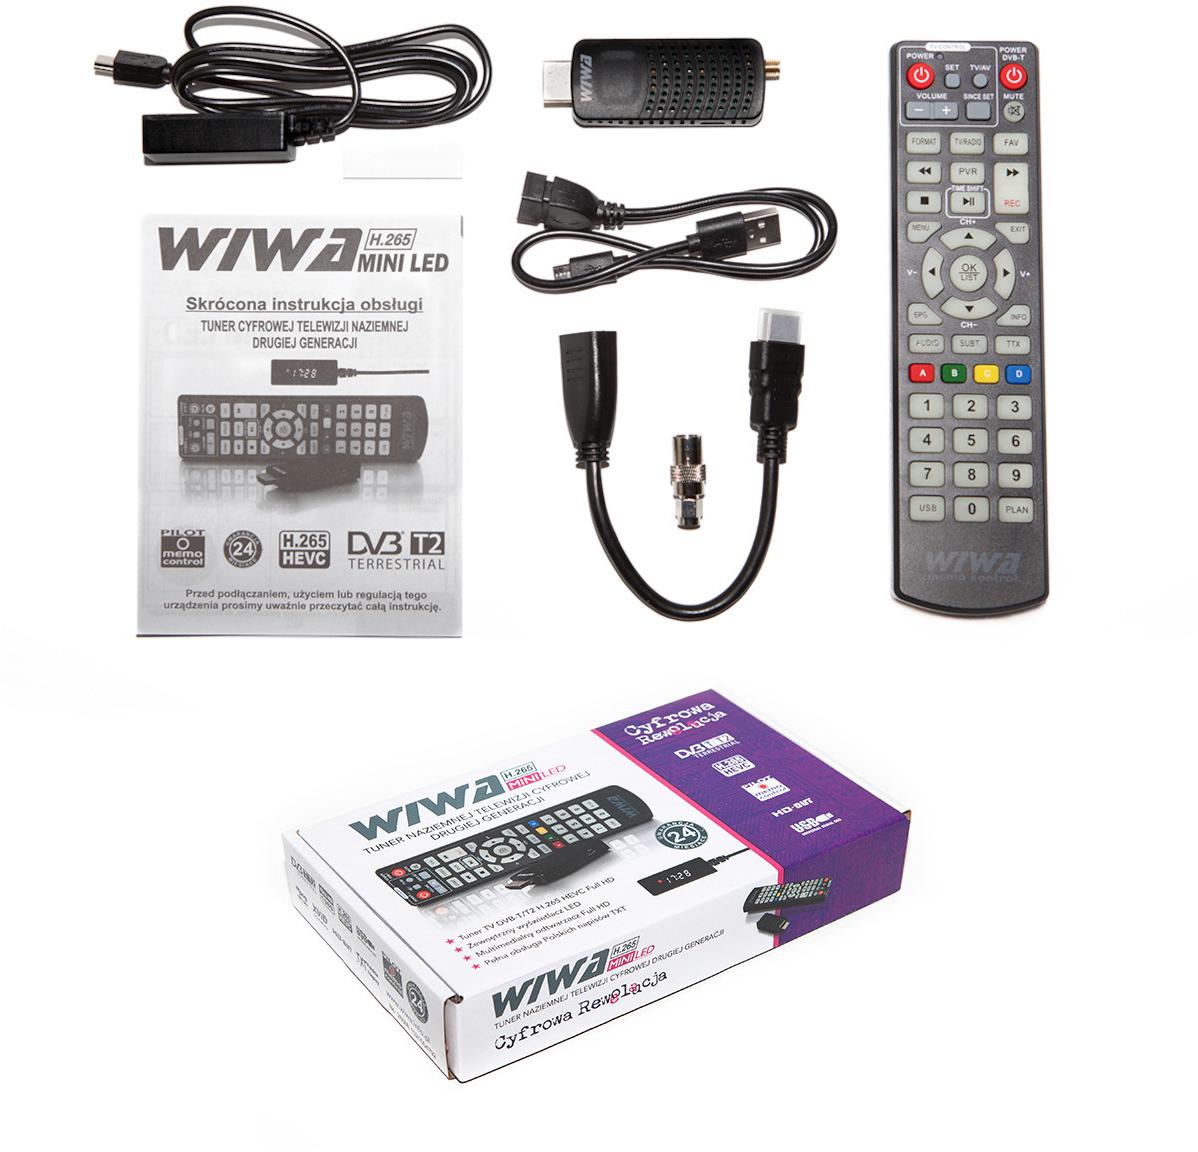 Tuner DVB-T/T2 WIWA H.265 MINI LED - przeznaczenie urządzenia: